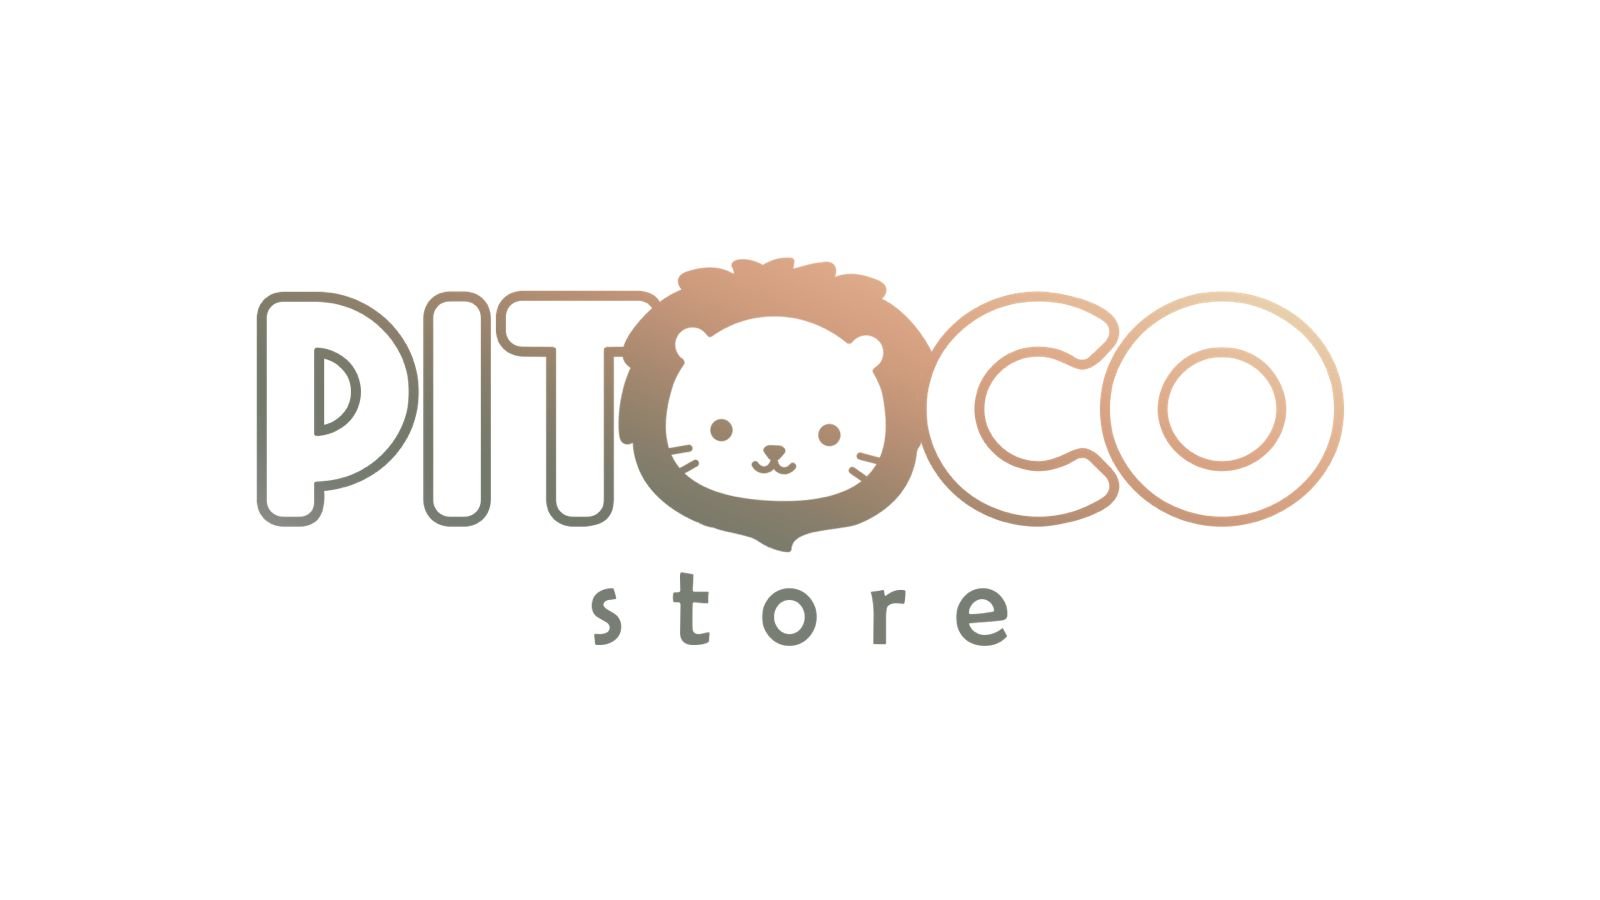 Babebi  Pitoco Store